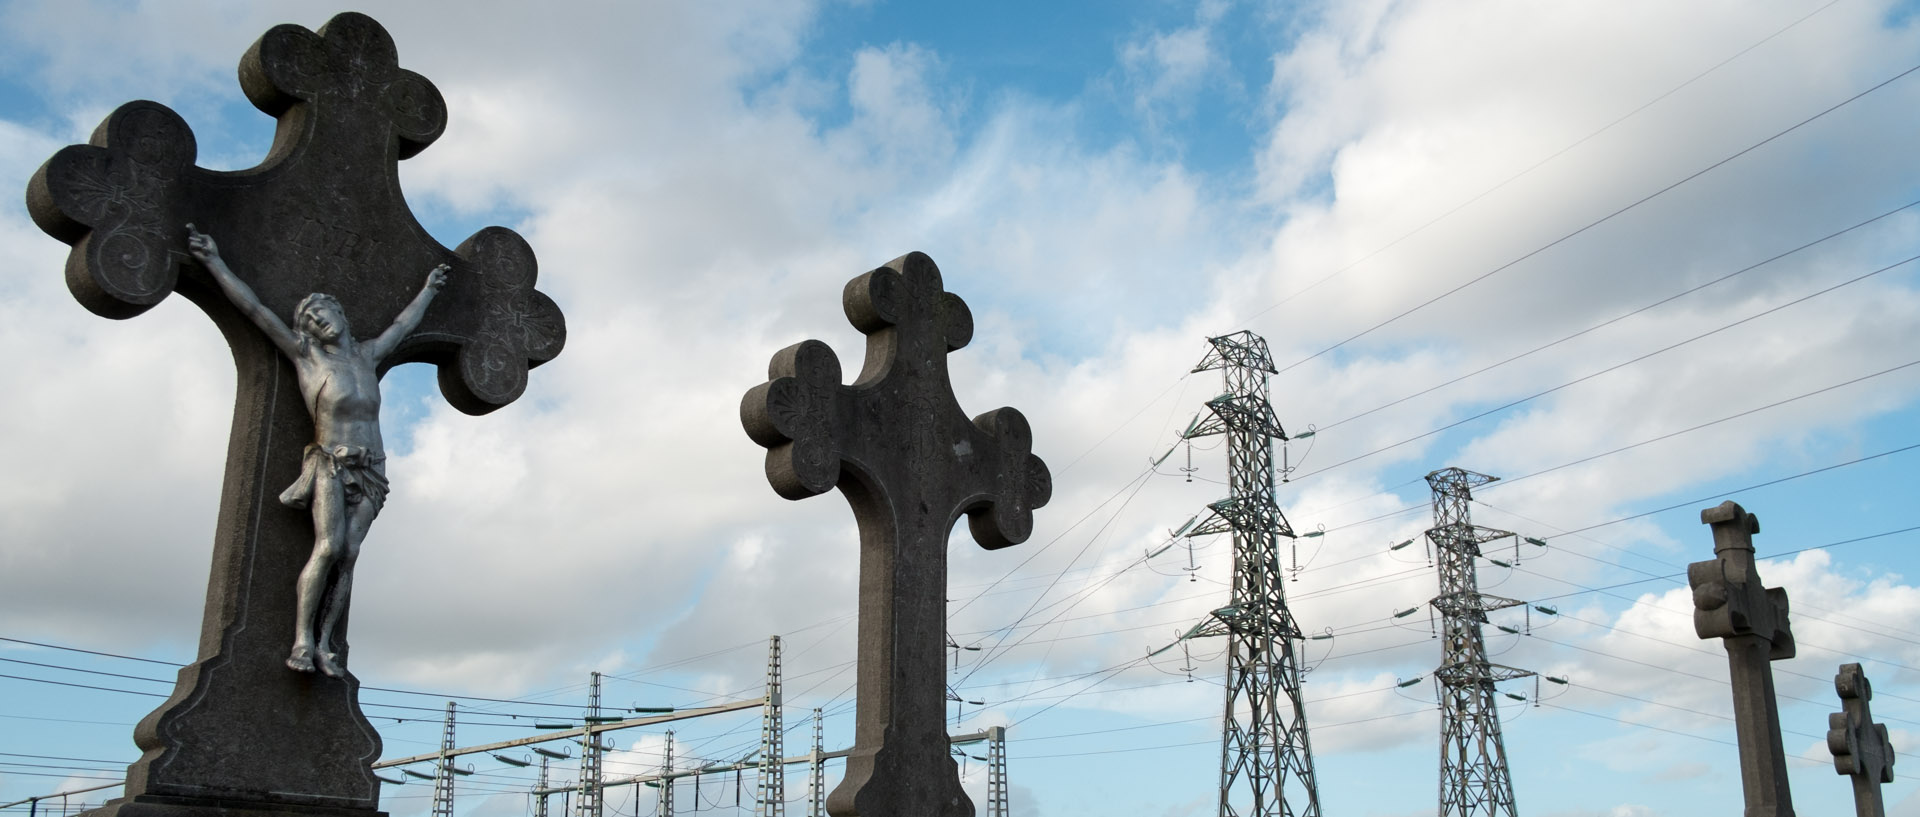 Tombes et pylones électriques dans un cimetière de Lille.